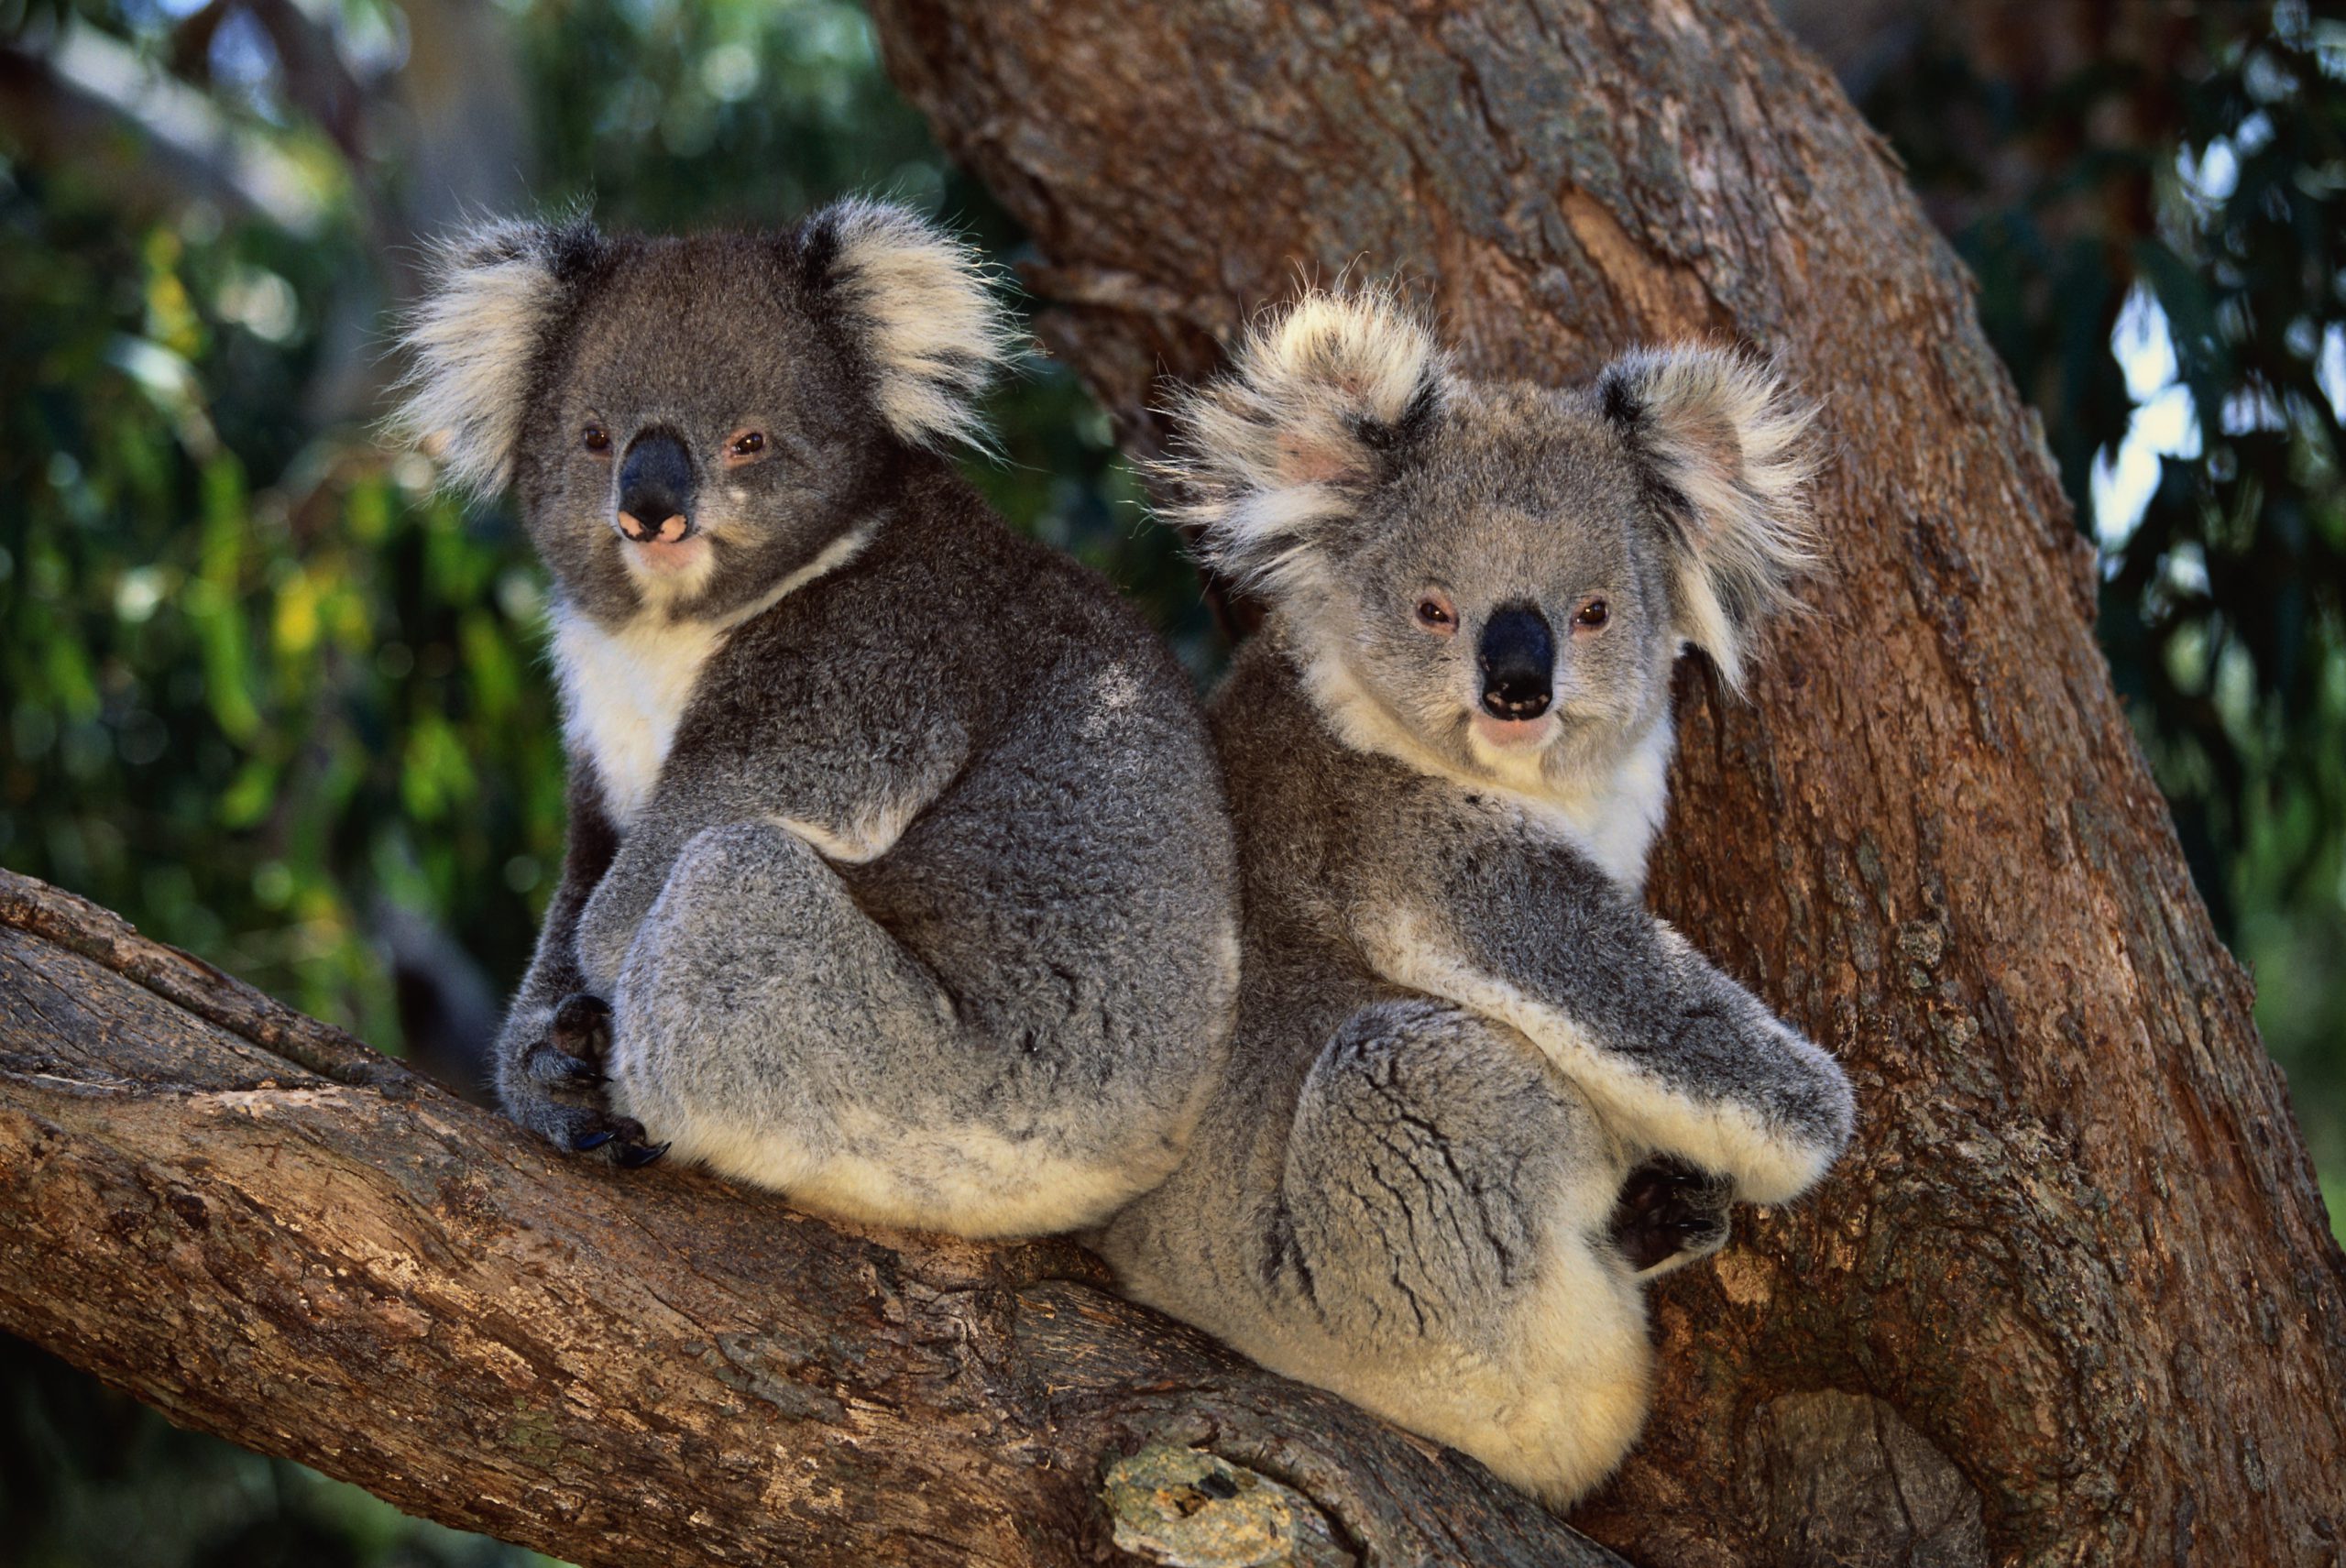 Free kids’ book raising money for koalas